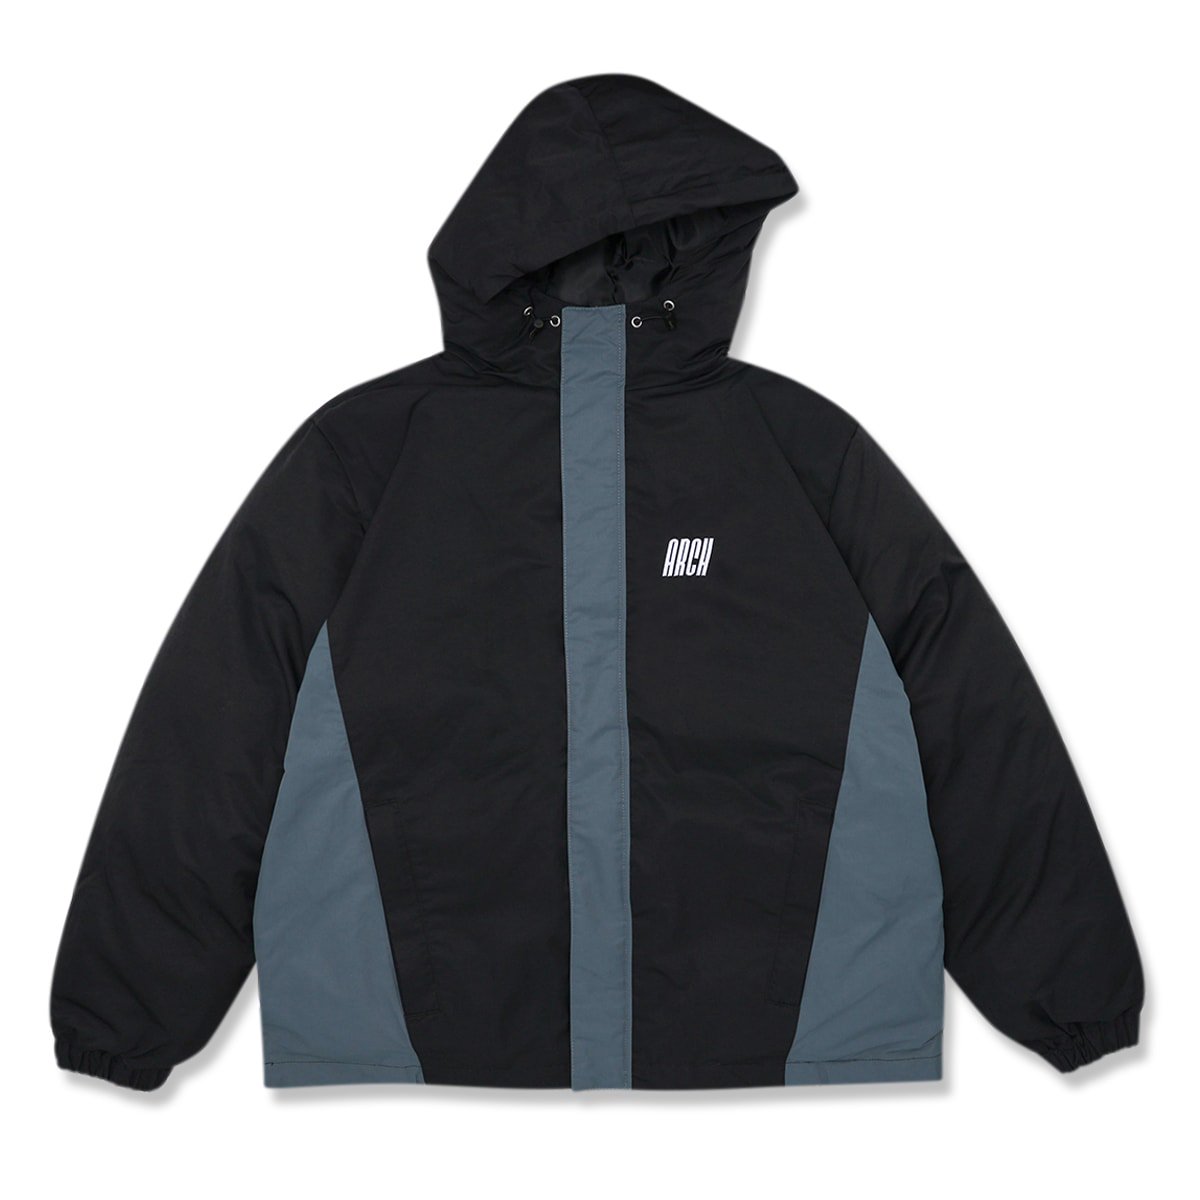 tilt logo insulation jacket【black】